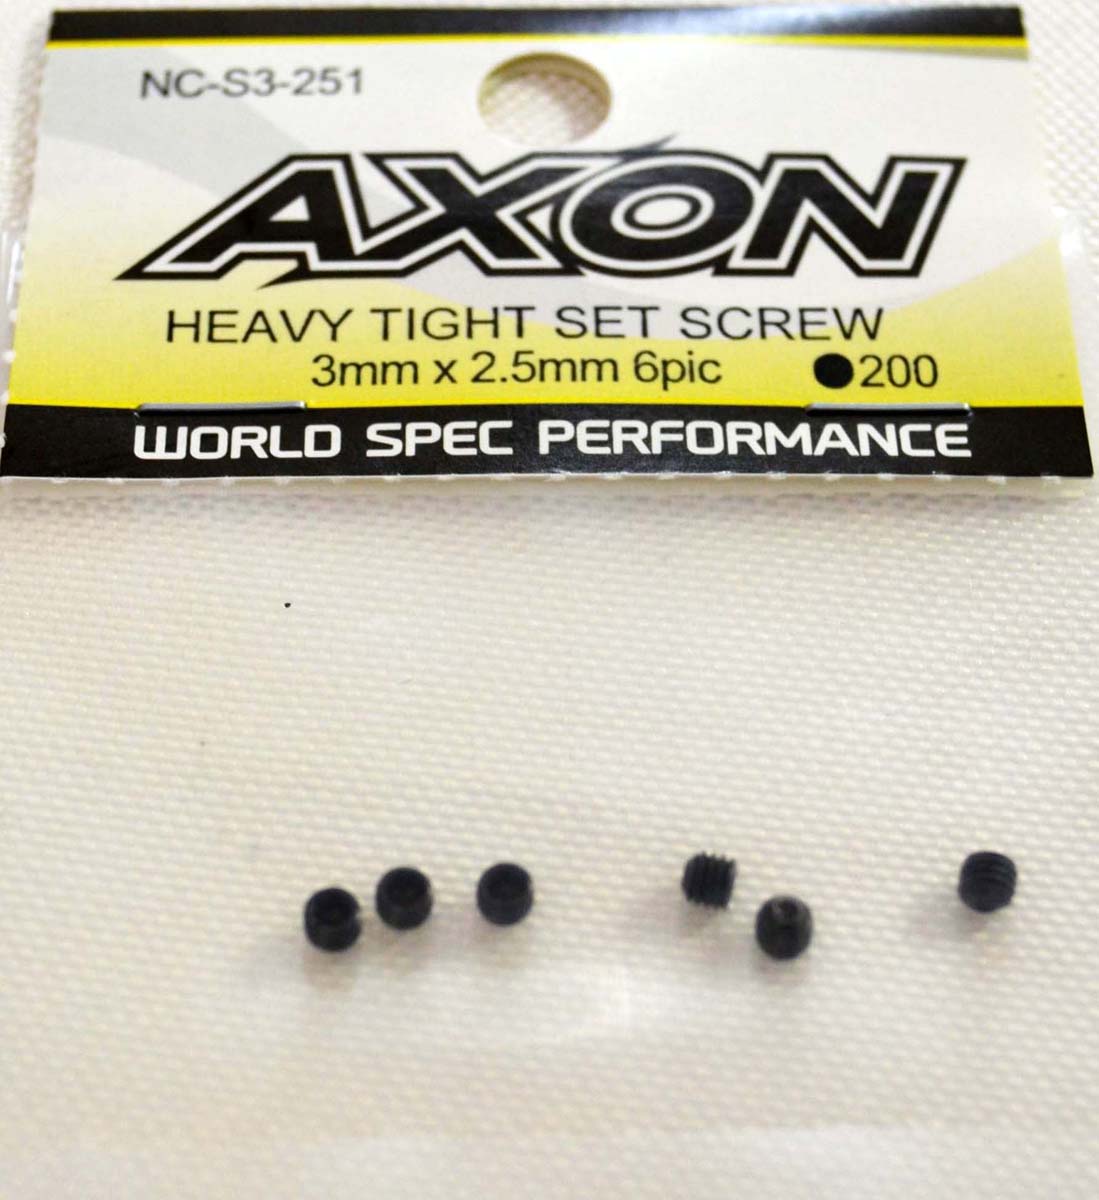 AXON HEAVY TIGHT SET SCREW (3mm x 2.5mm) 6pic 